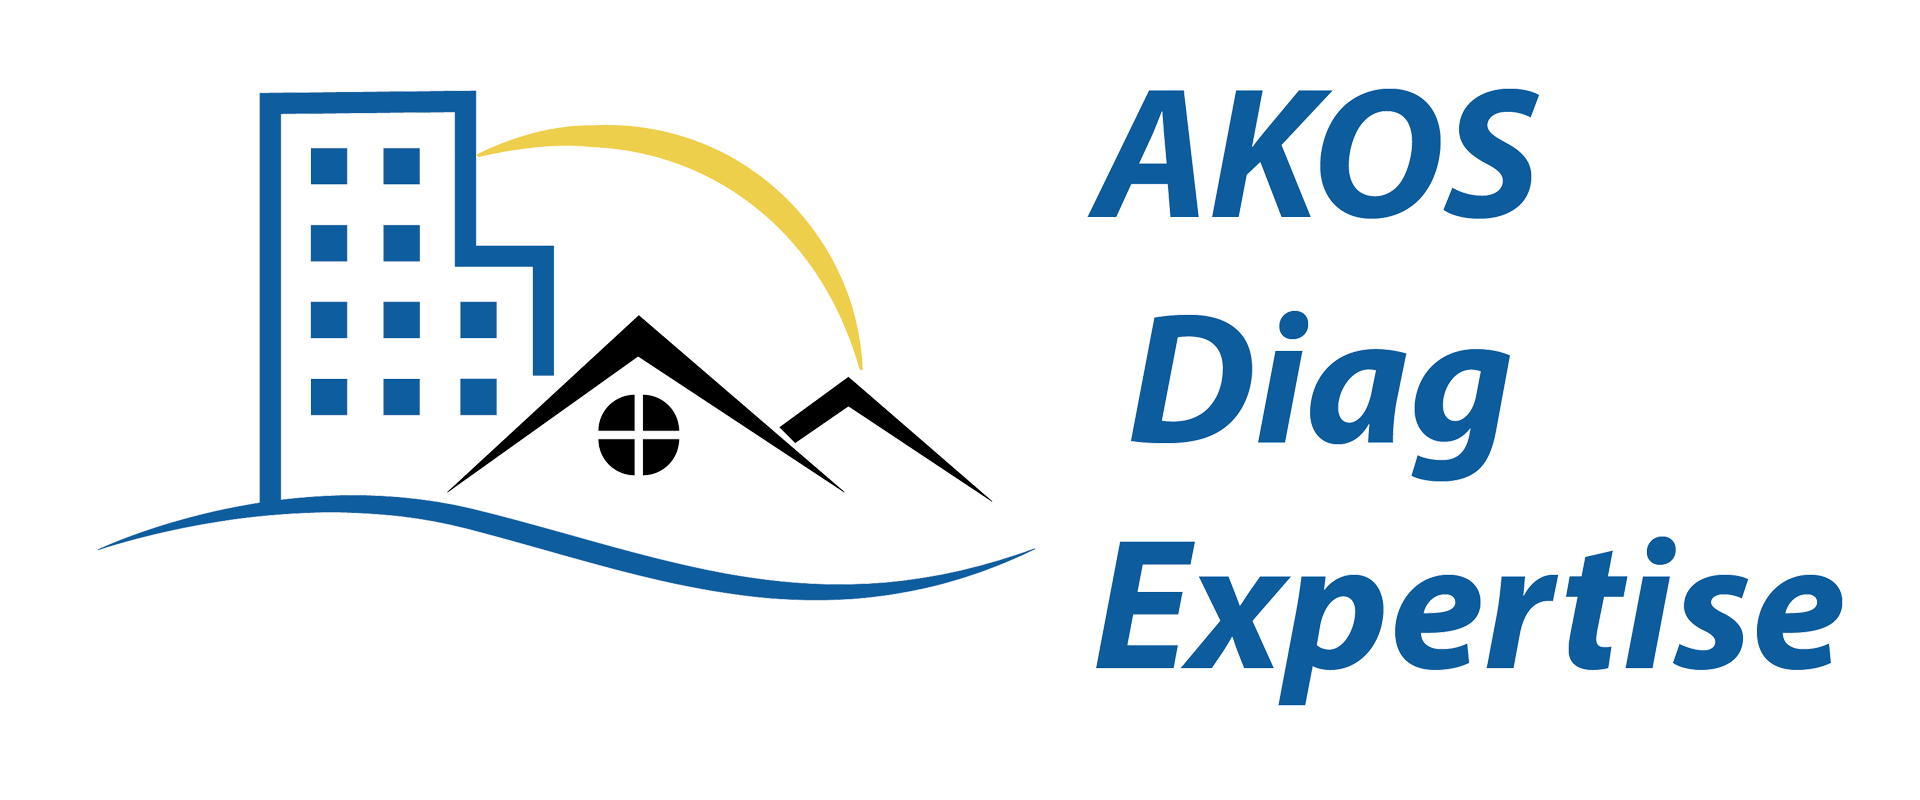 Logo AKOS diag expertise